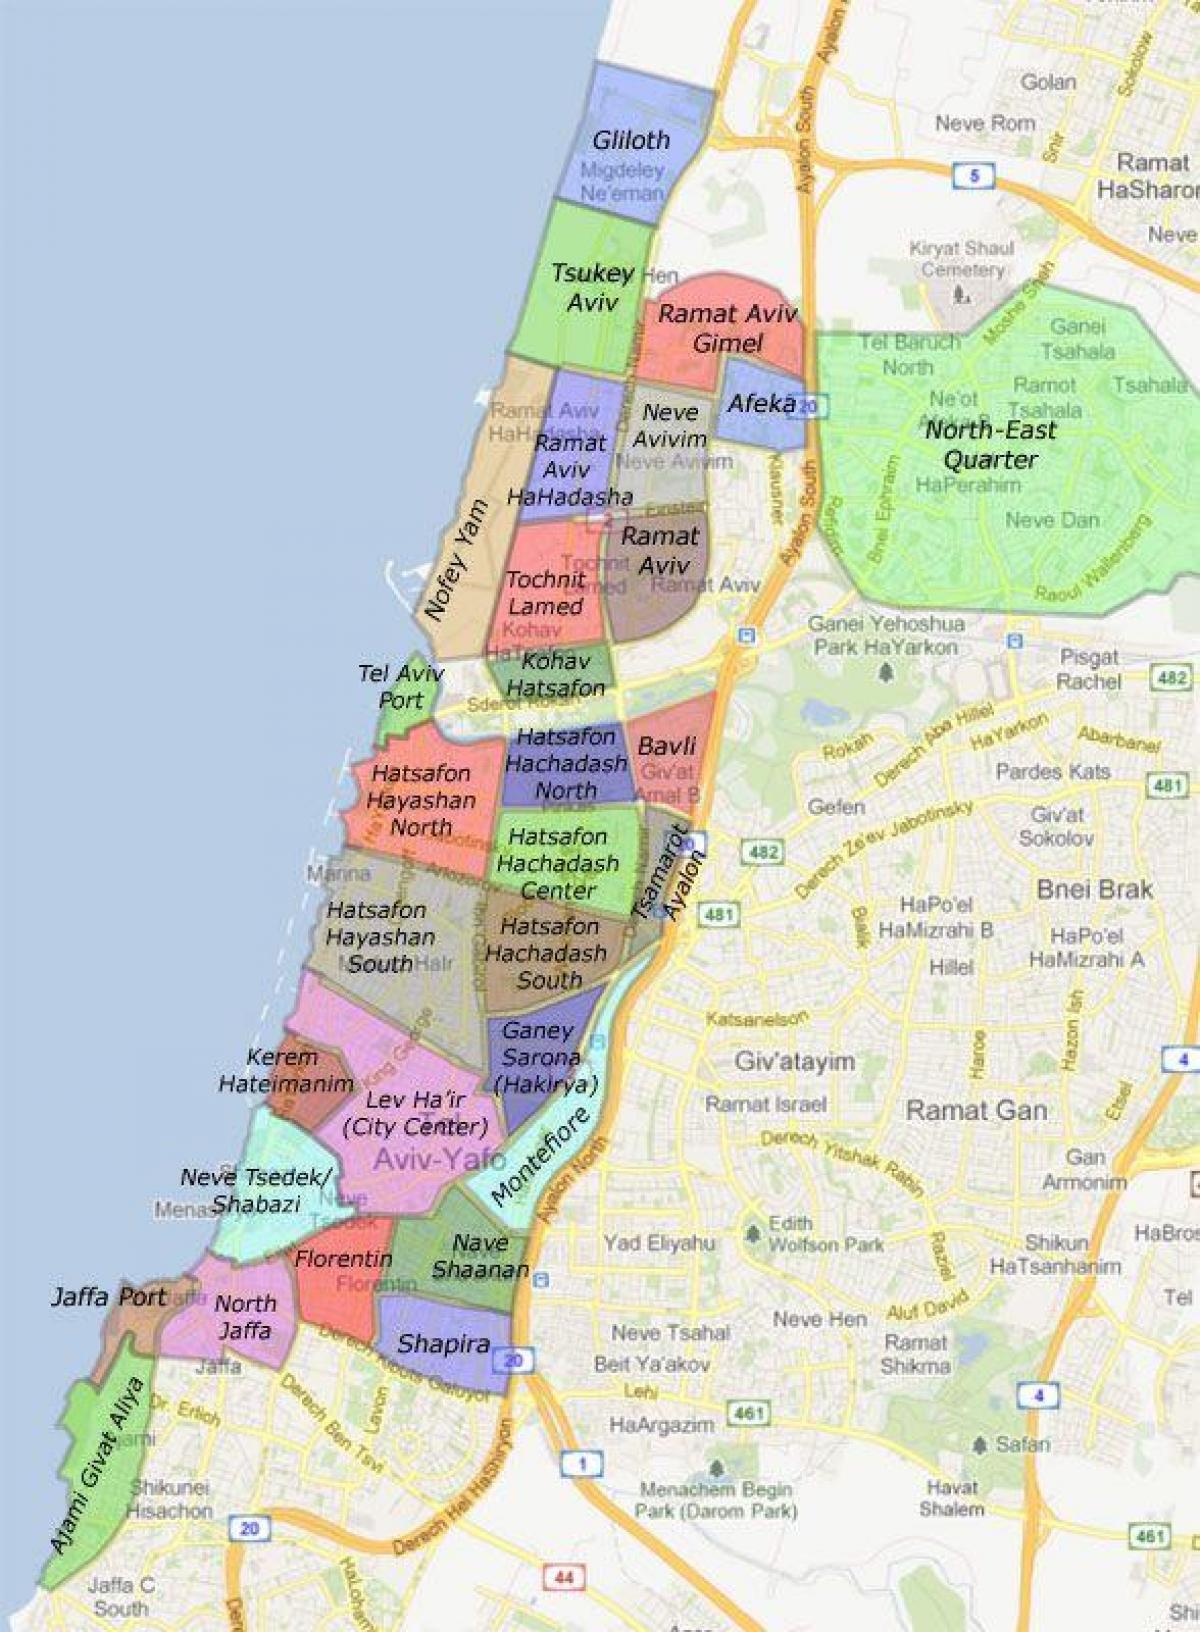 Israel. kgm neighborhoods แผนที่